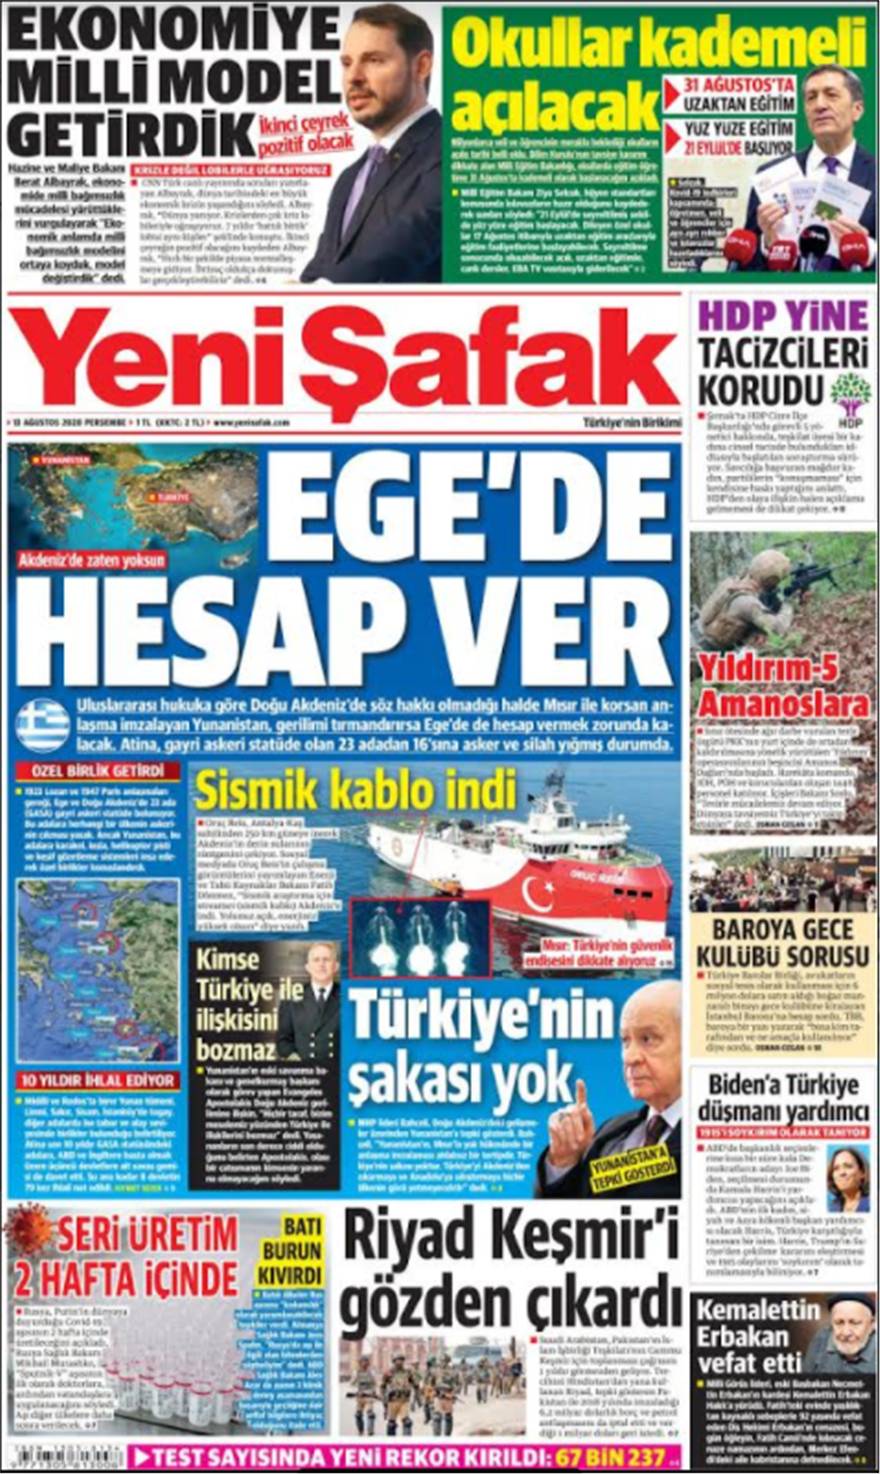 Ψυχολογικός πόλεμος από την Τουρκία:  «Σε περίπτωση πολέμου, πρώτος στόχος τα νησιά»